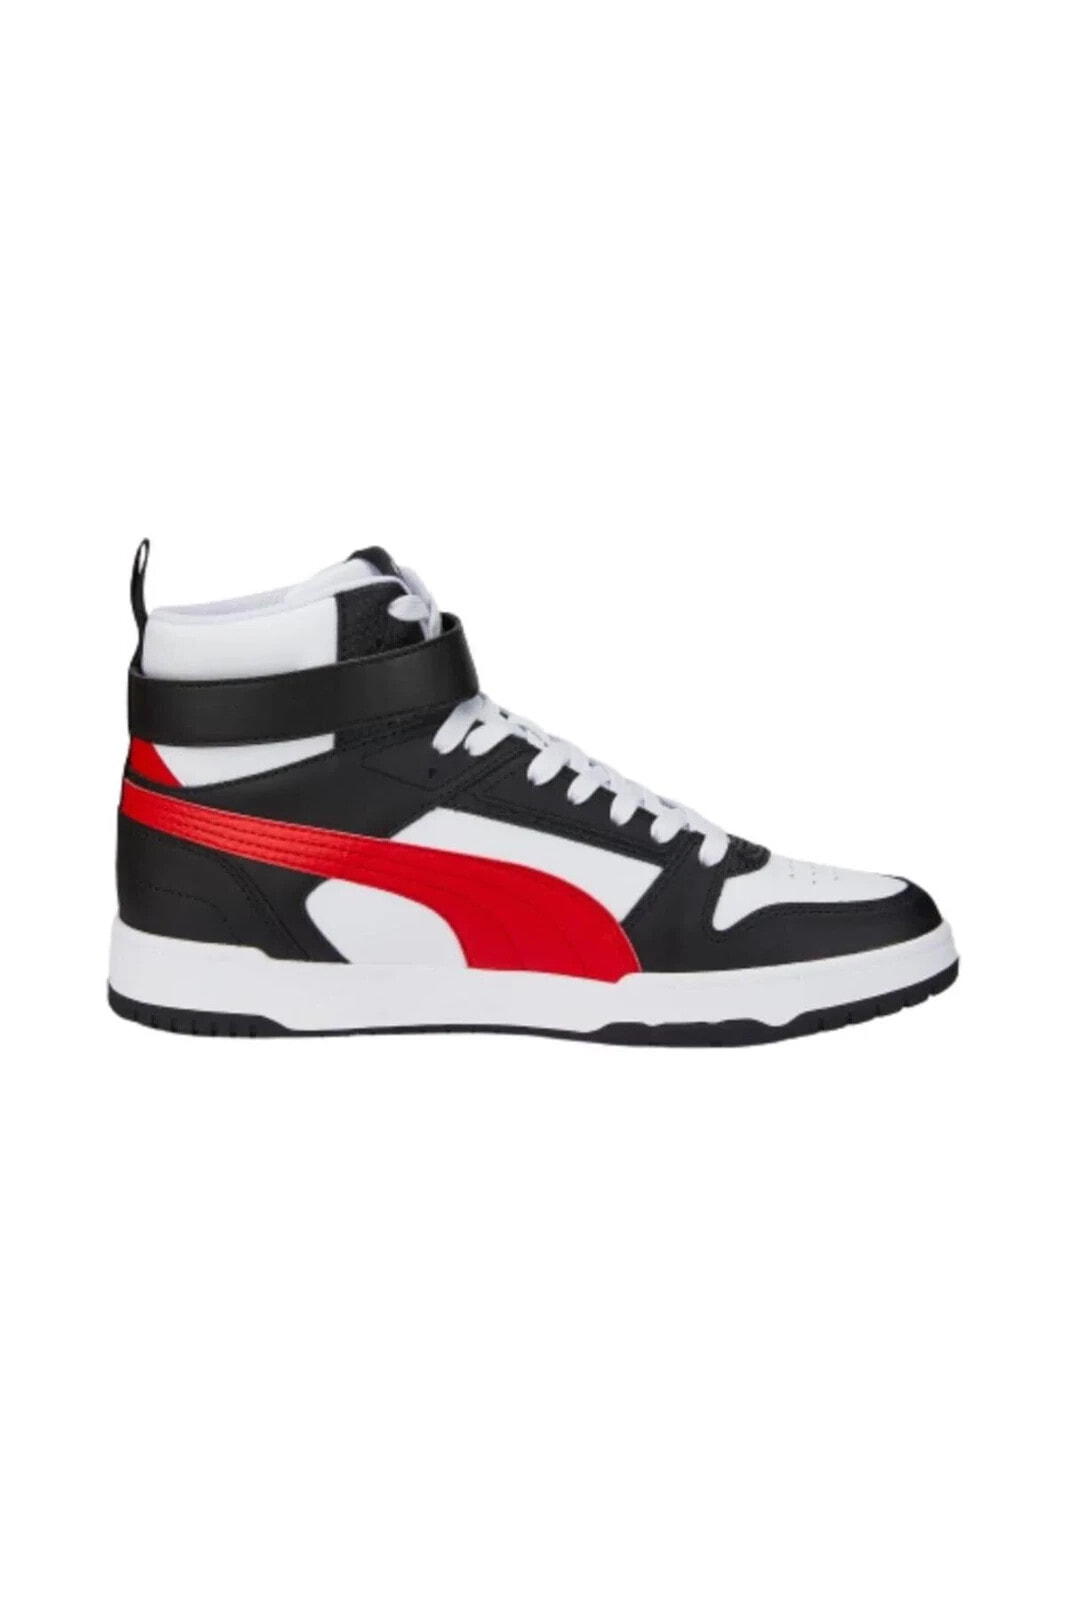 RBD Game Beyaz-Kırmızı Erkek Günlük Ayakkabı